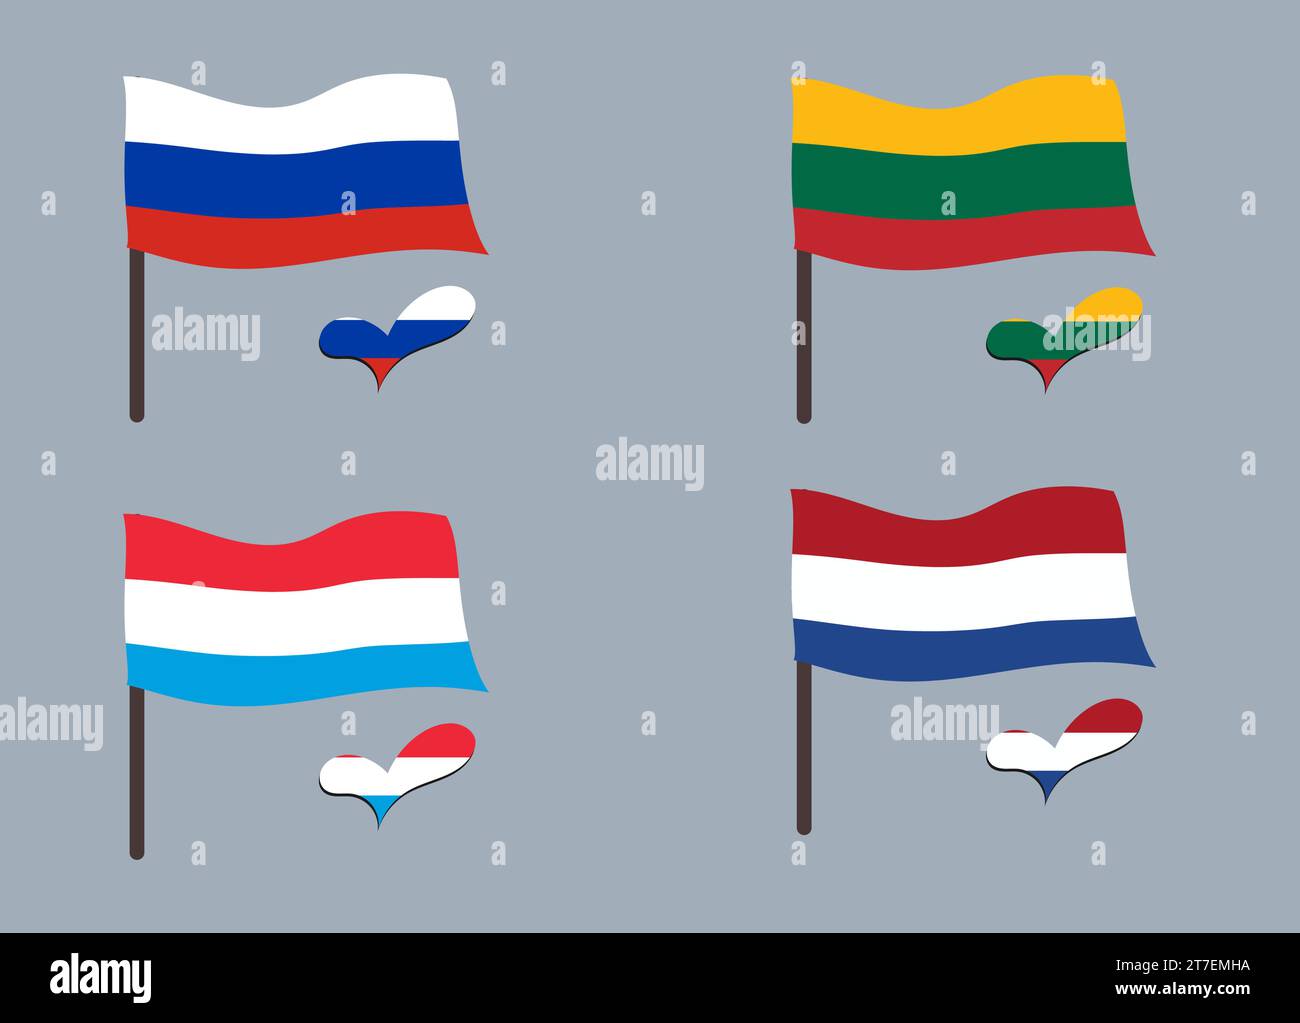 Ensemble de drapeaux (Lituanie, Luxembourg, pays-Bas, Russie). Coeur en couleurs de drapeau. Ensemble de symboles nationaux. Illustration de Vecteur